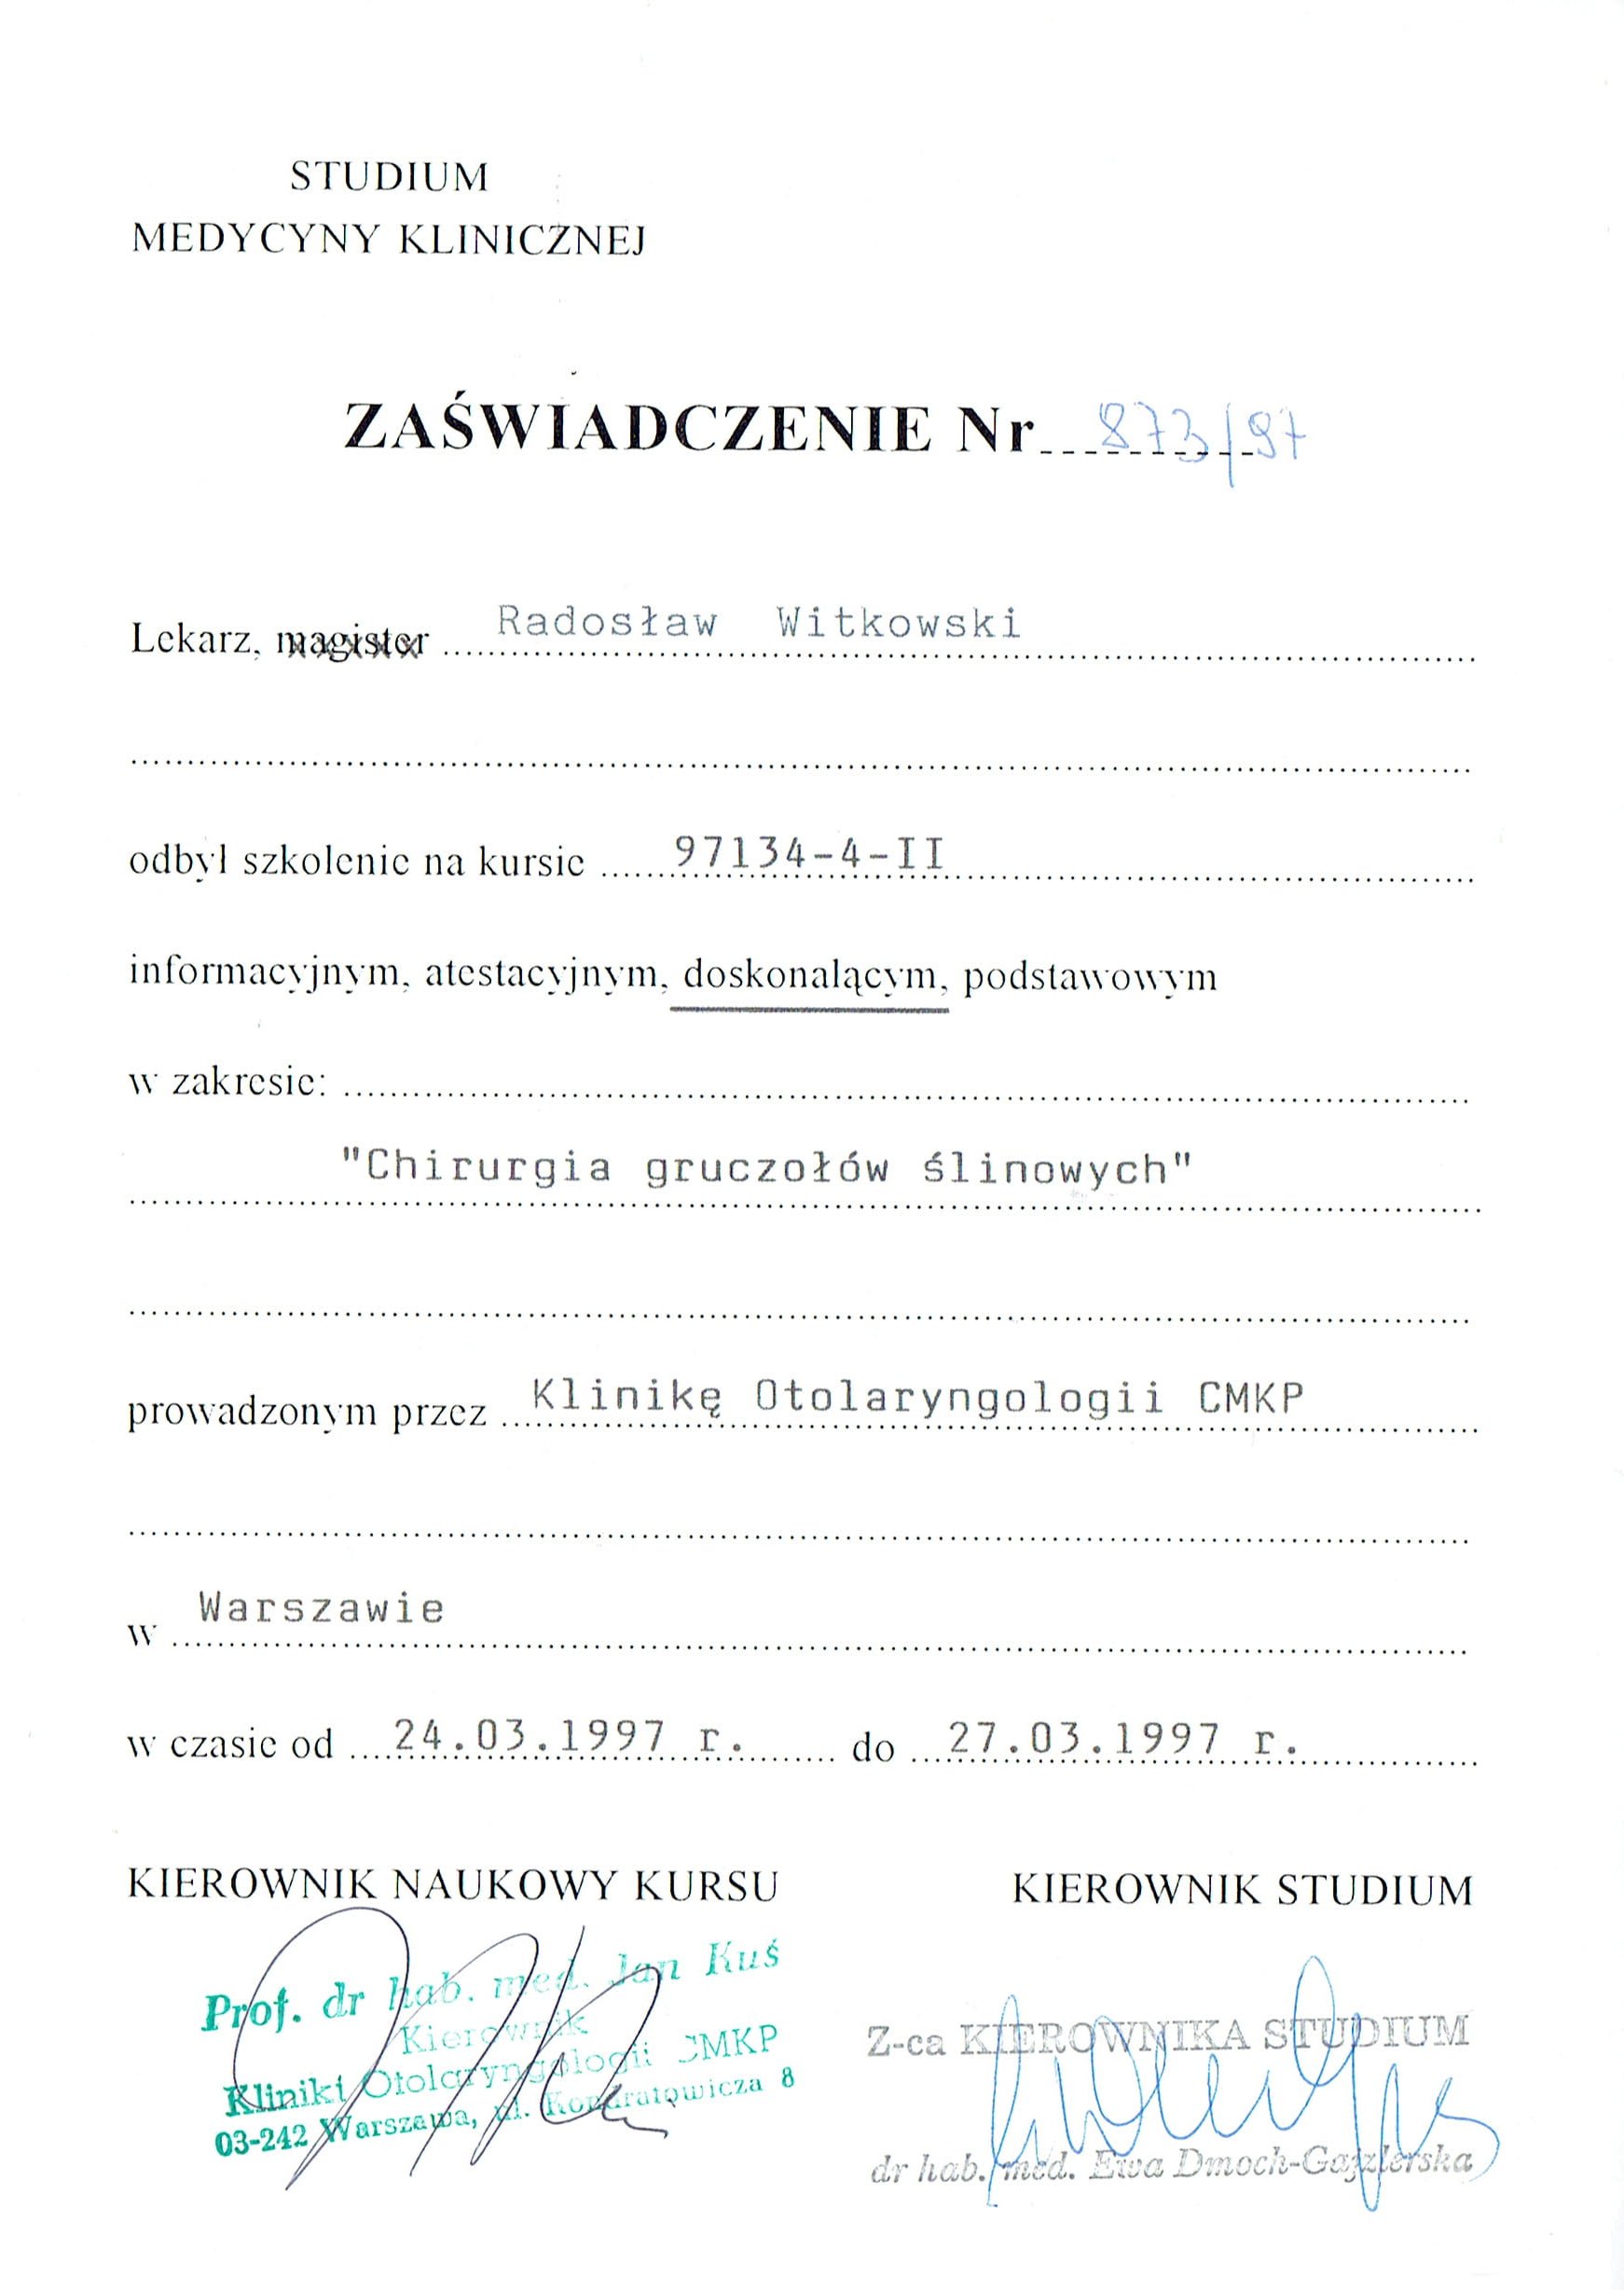 Radosław Witkowski certyfikat 12